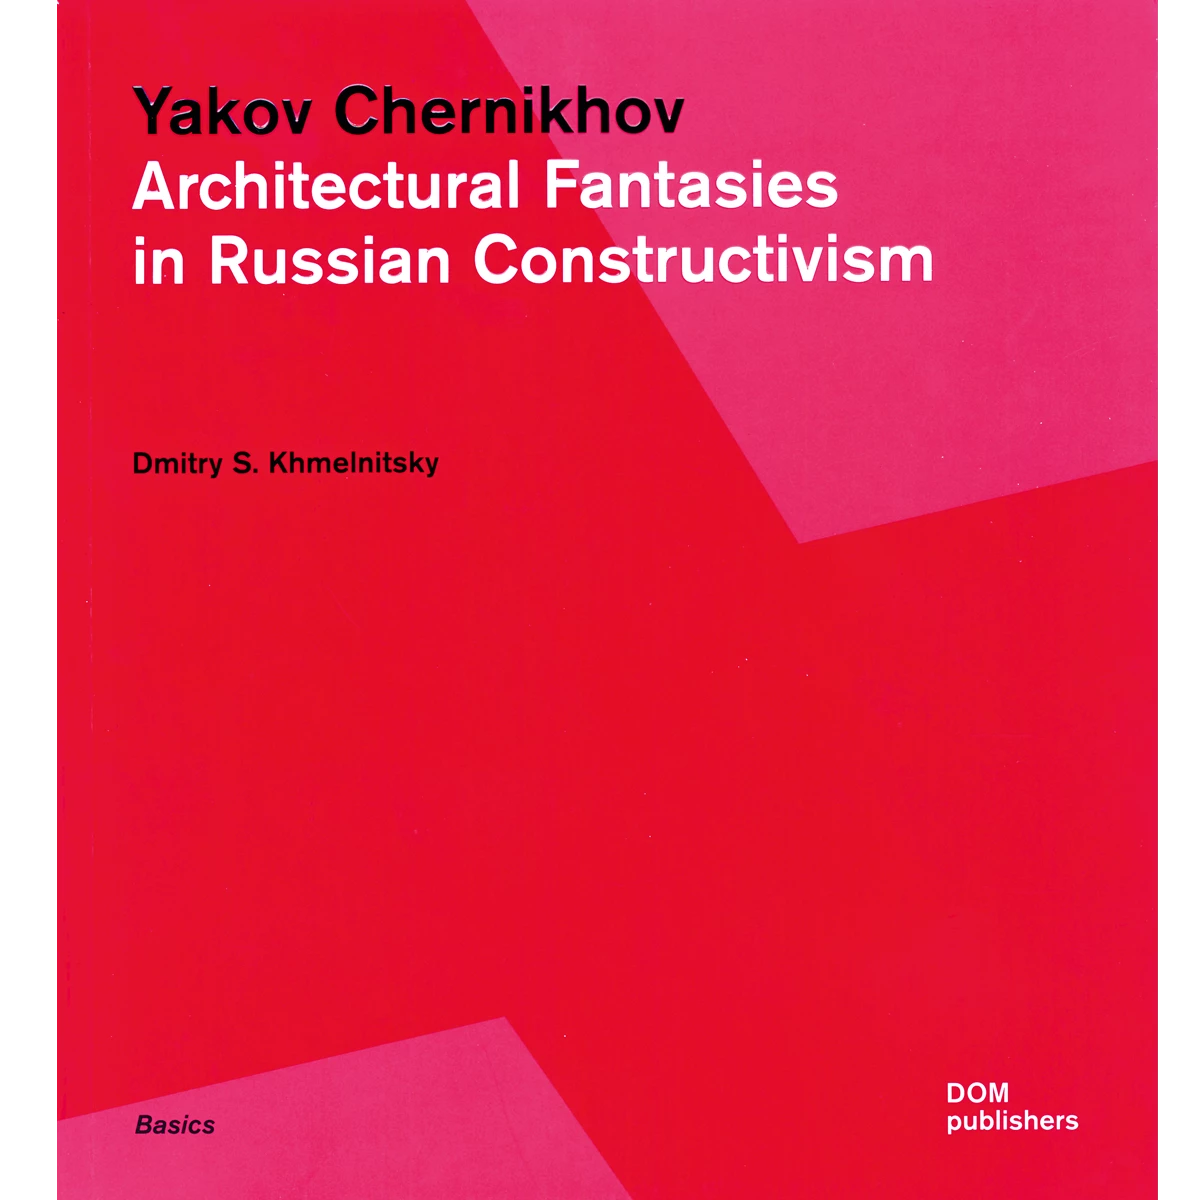 Yakov Chernikhov